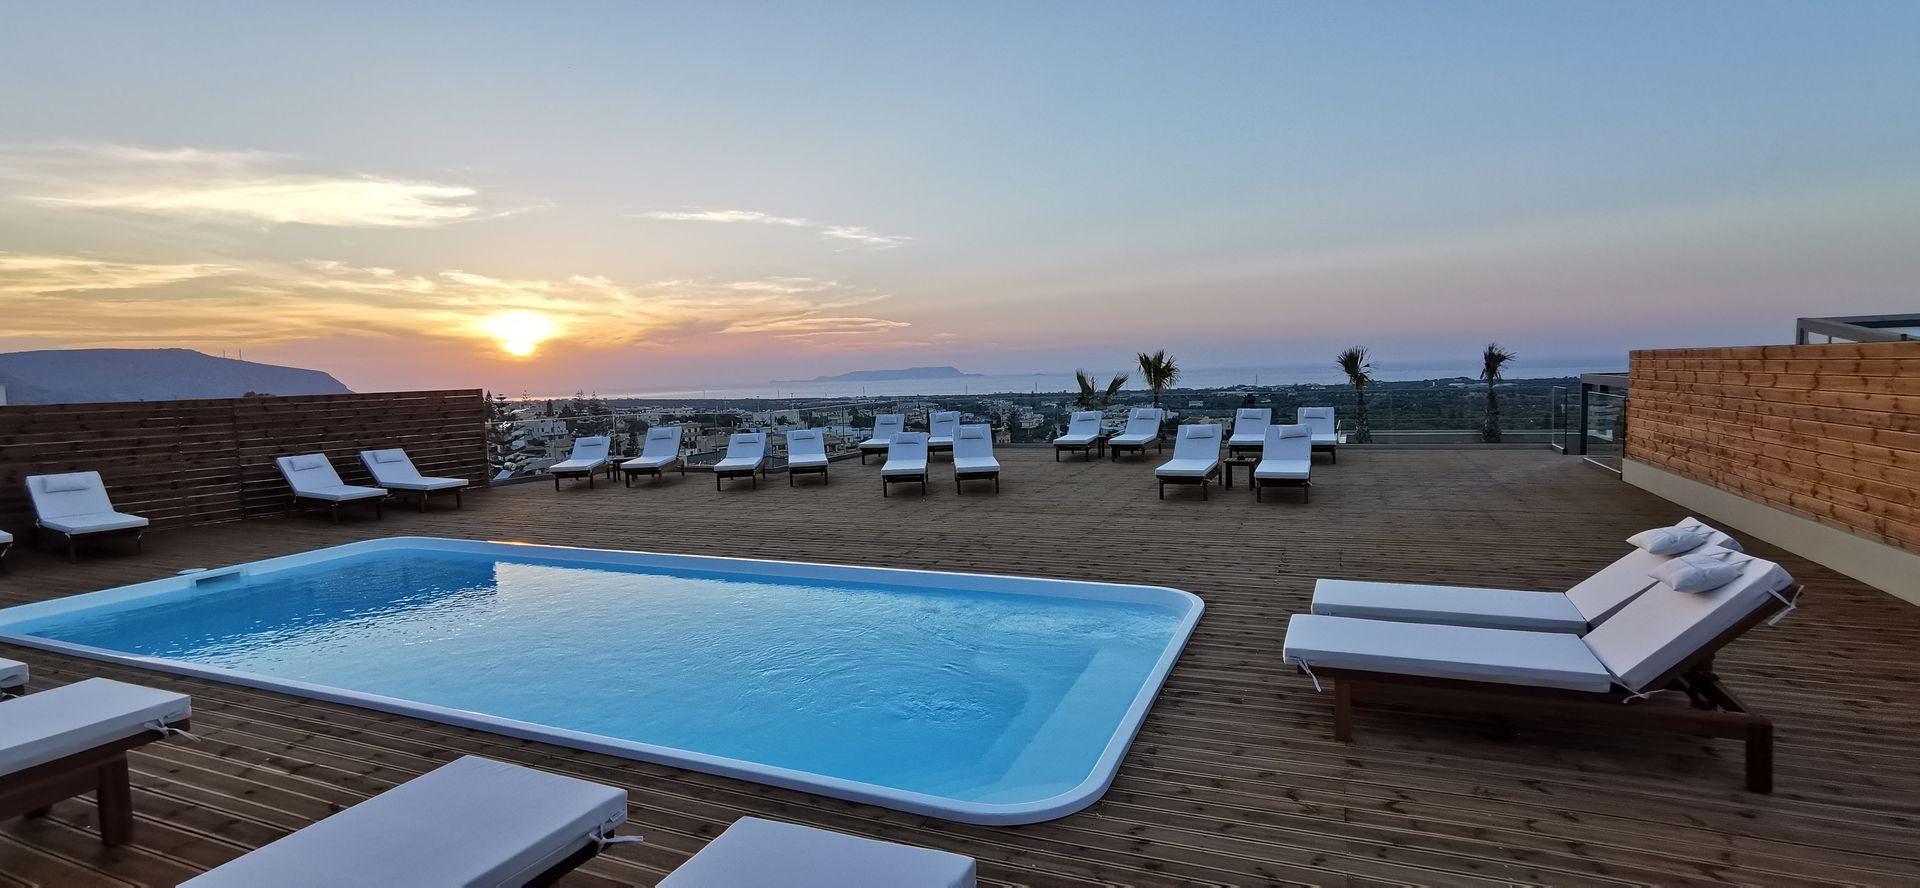 4* Villaggio Hotel - Χερσόνησος, Κρήτη ✦ 2 Ημέρες (1 Διανυκτέρευση) ✦ 2 άτομα ✦ 2 ✦ 10/04/2022 έως 30/09/2022 ✦ Yπέροχη θέα στον κόλπο της Χερσονήσου!